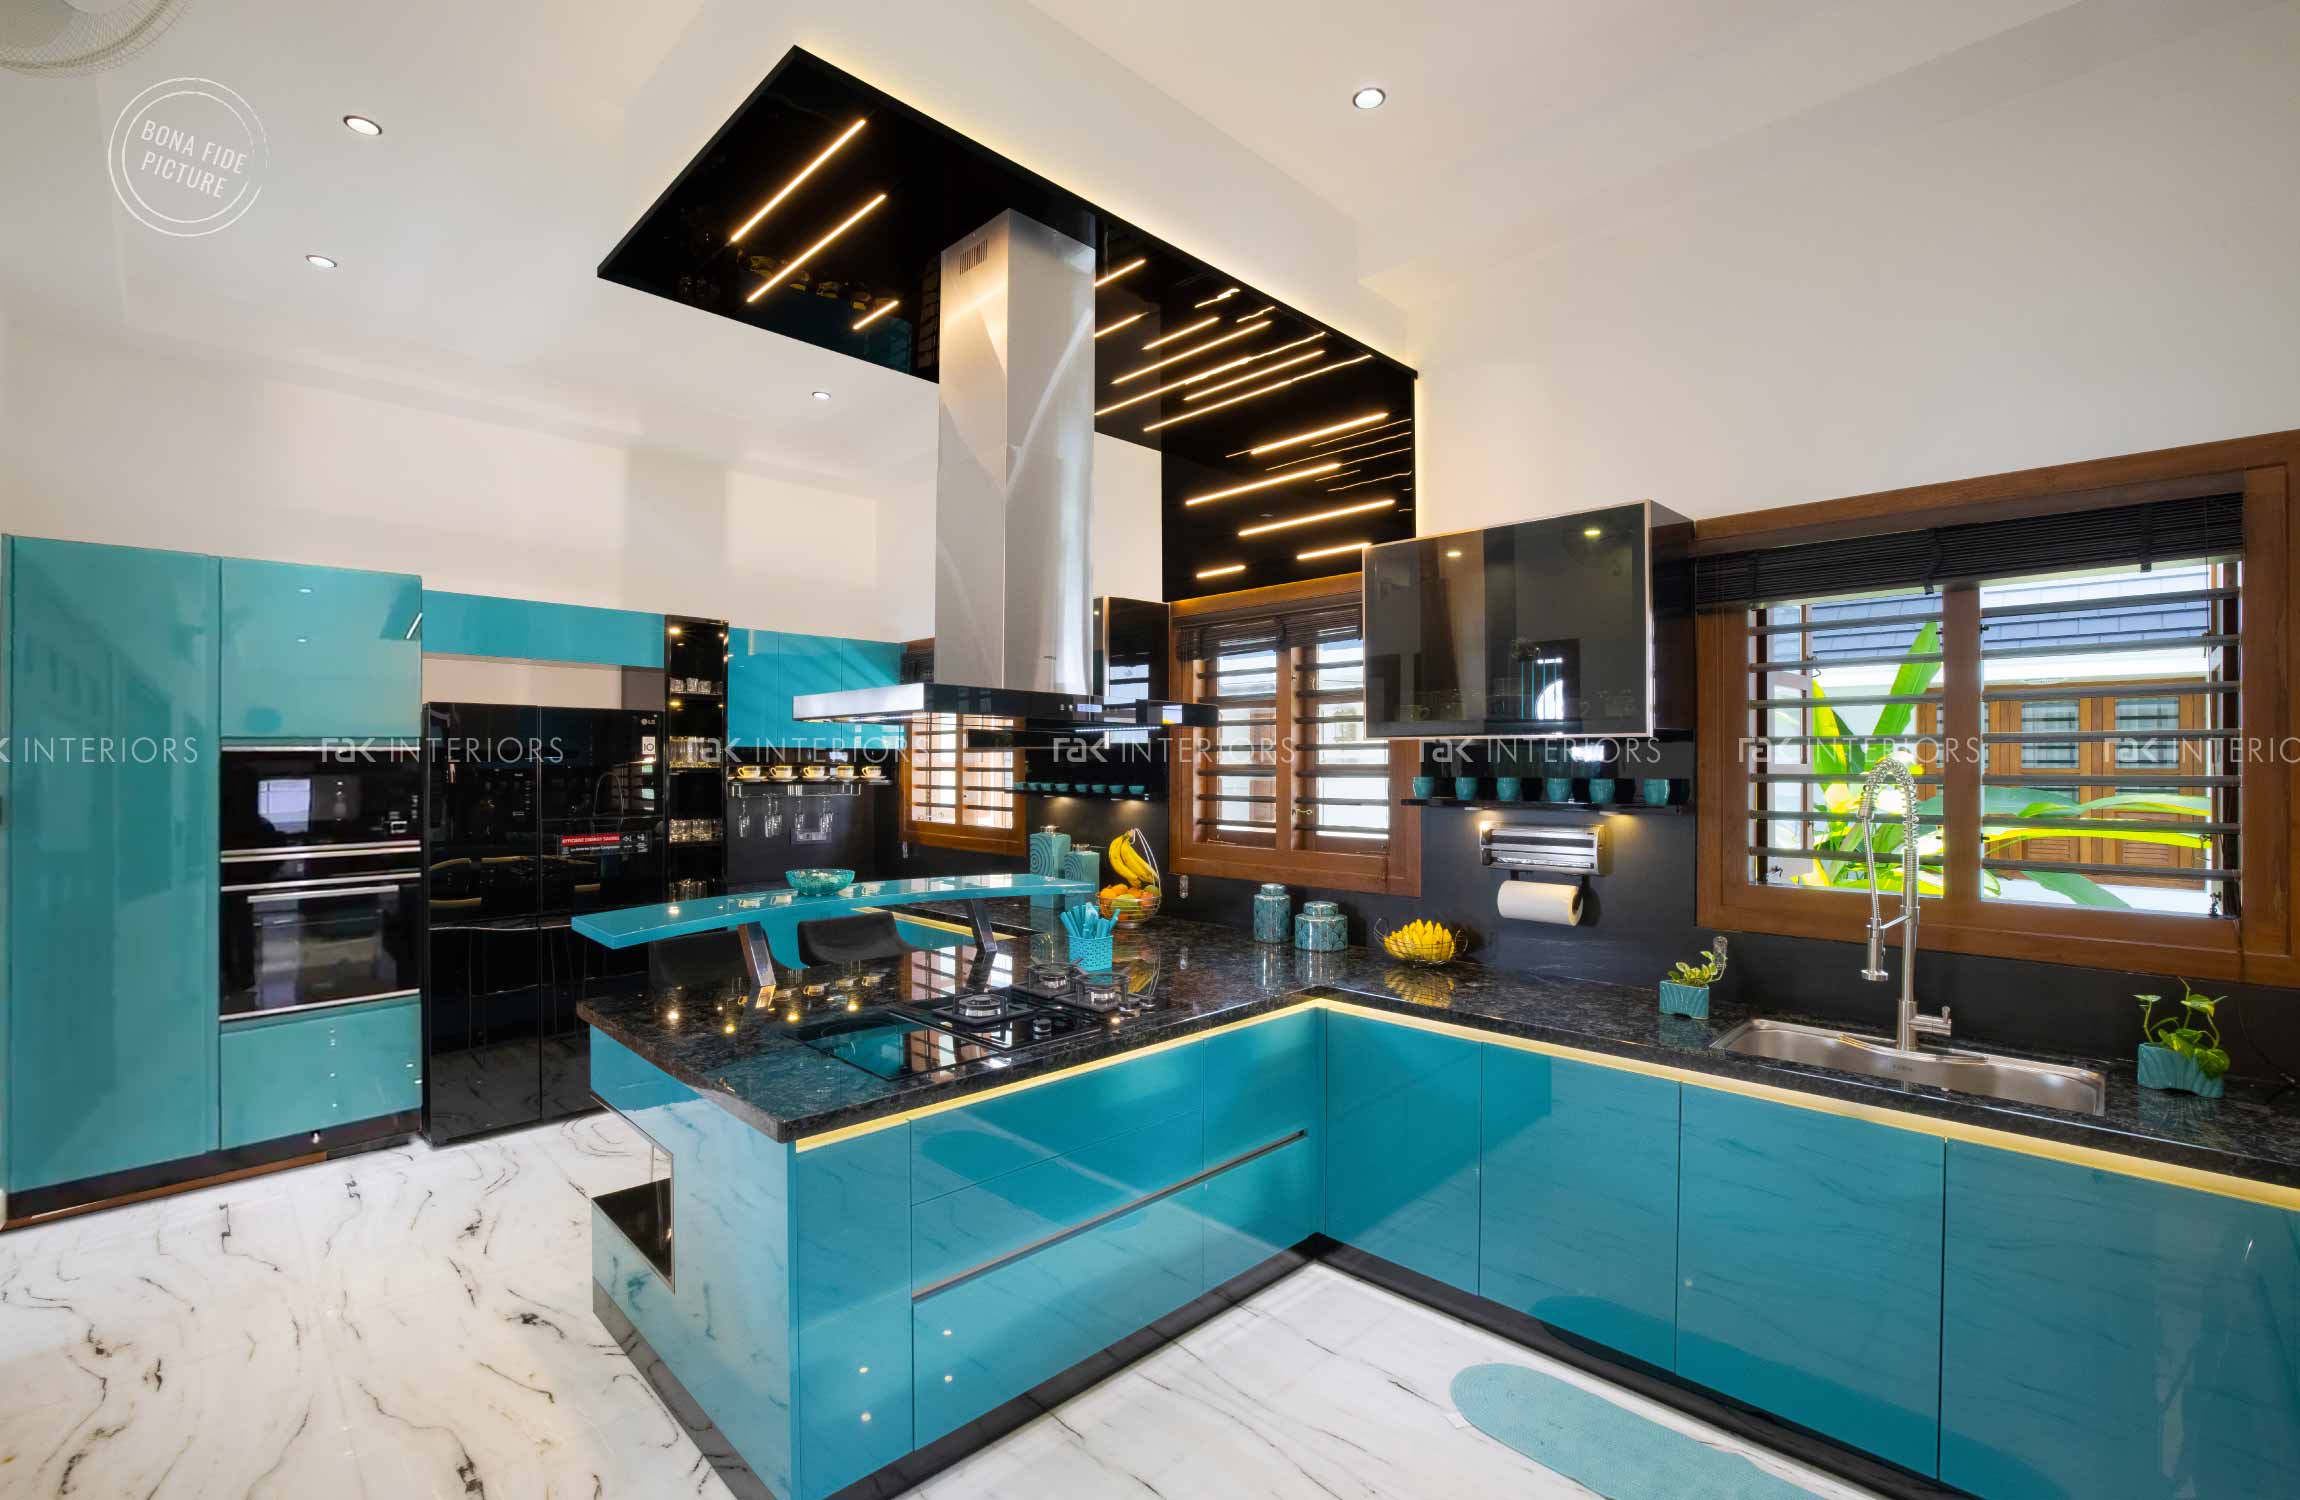 Traditional Interior Design Ideas For Your Home  Design Cafe